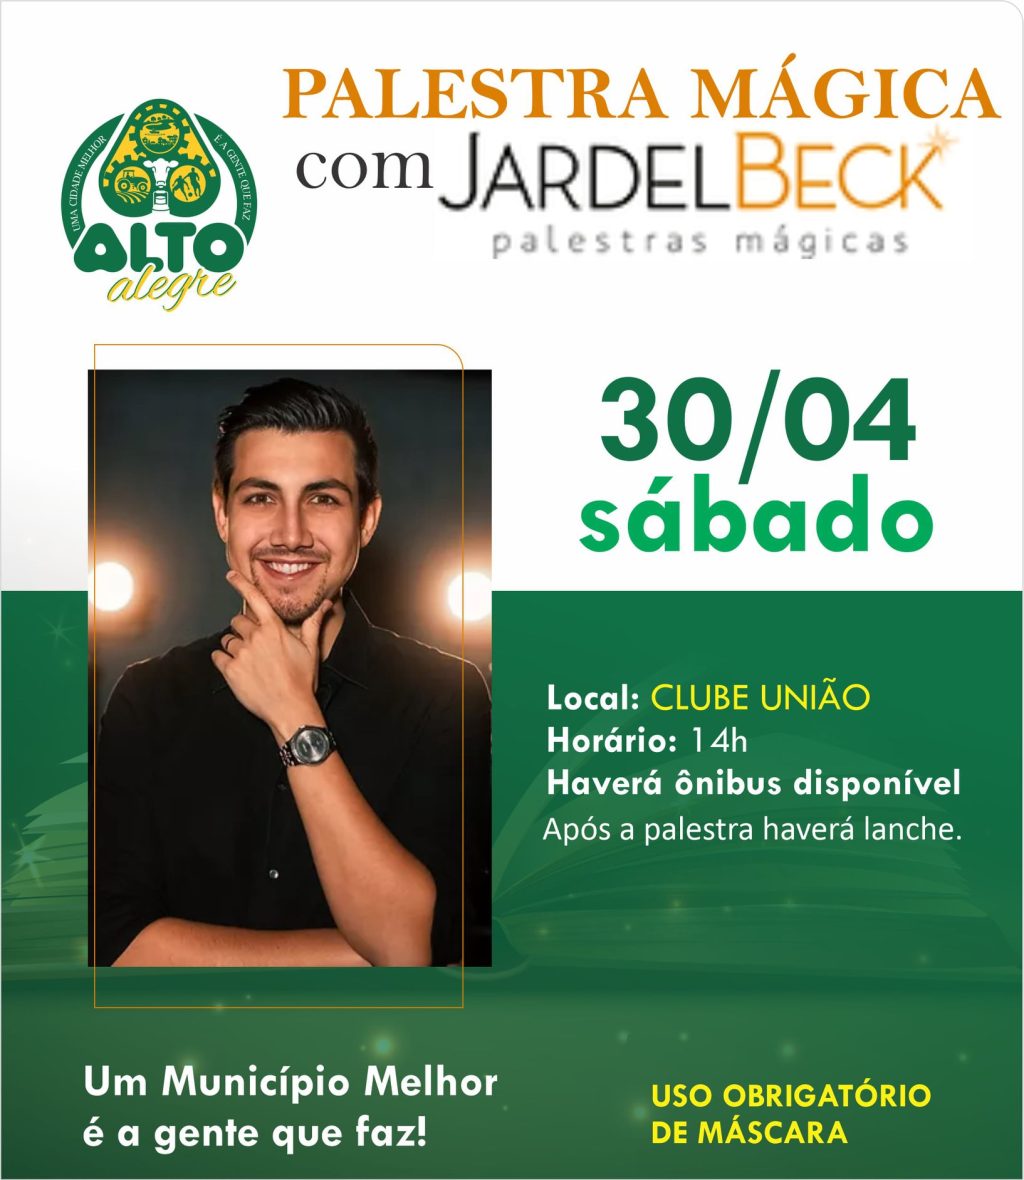 Palestra mágica motivacional com Jardel Beck será realizada no próximo sábado em Alto Alegre